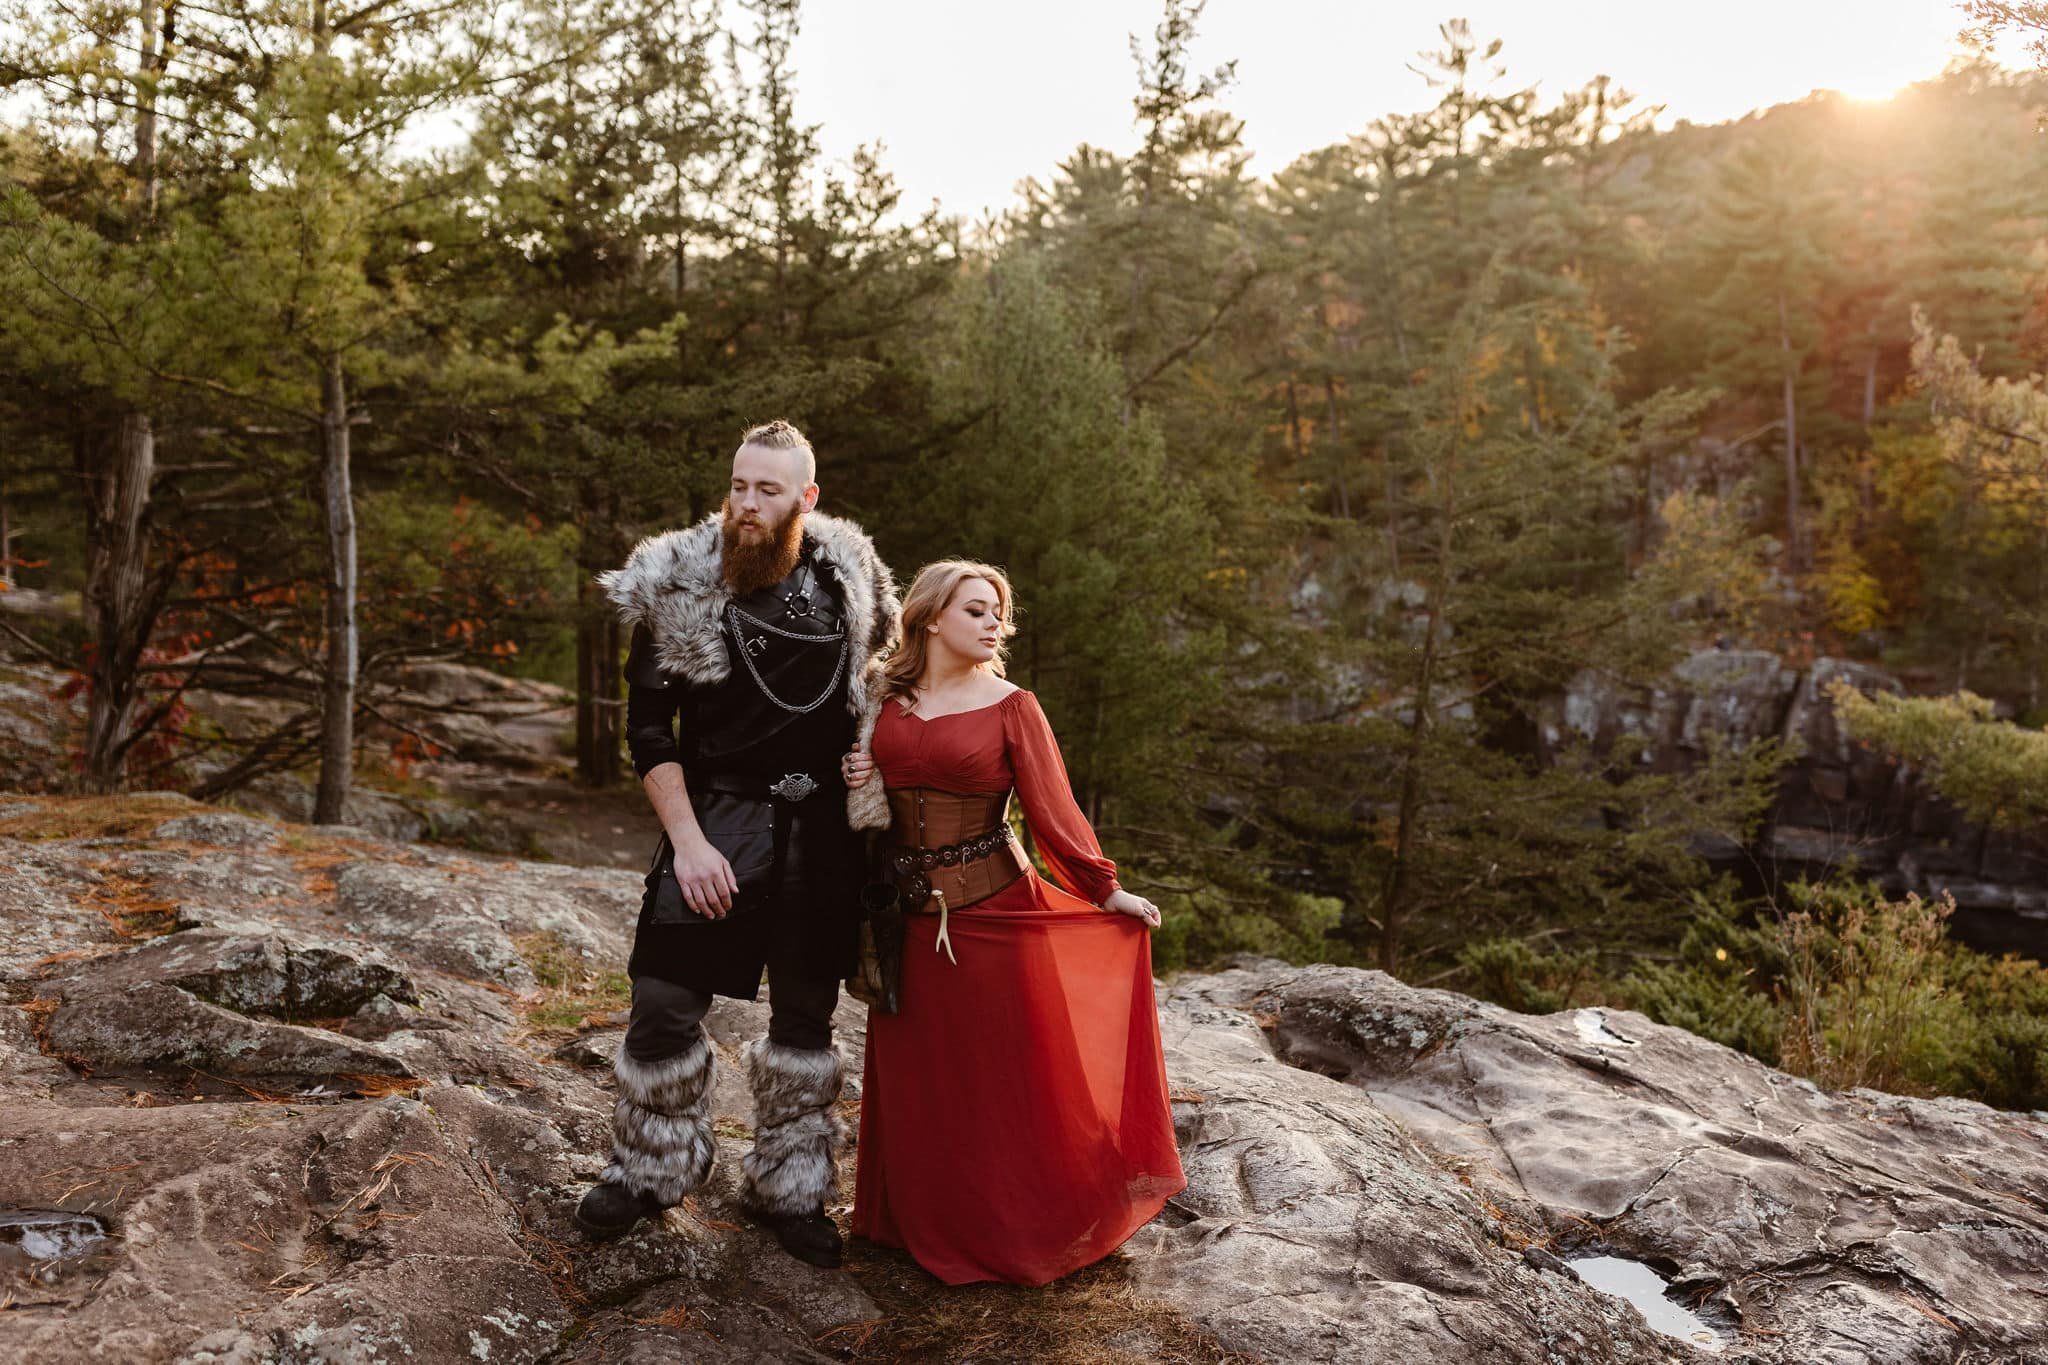 Viking style wedding